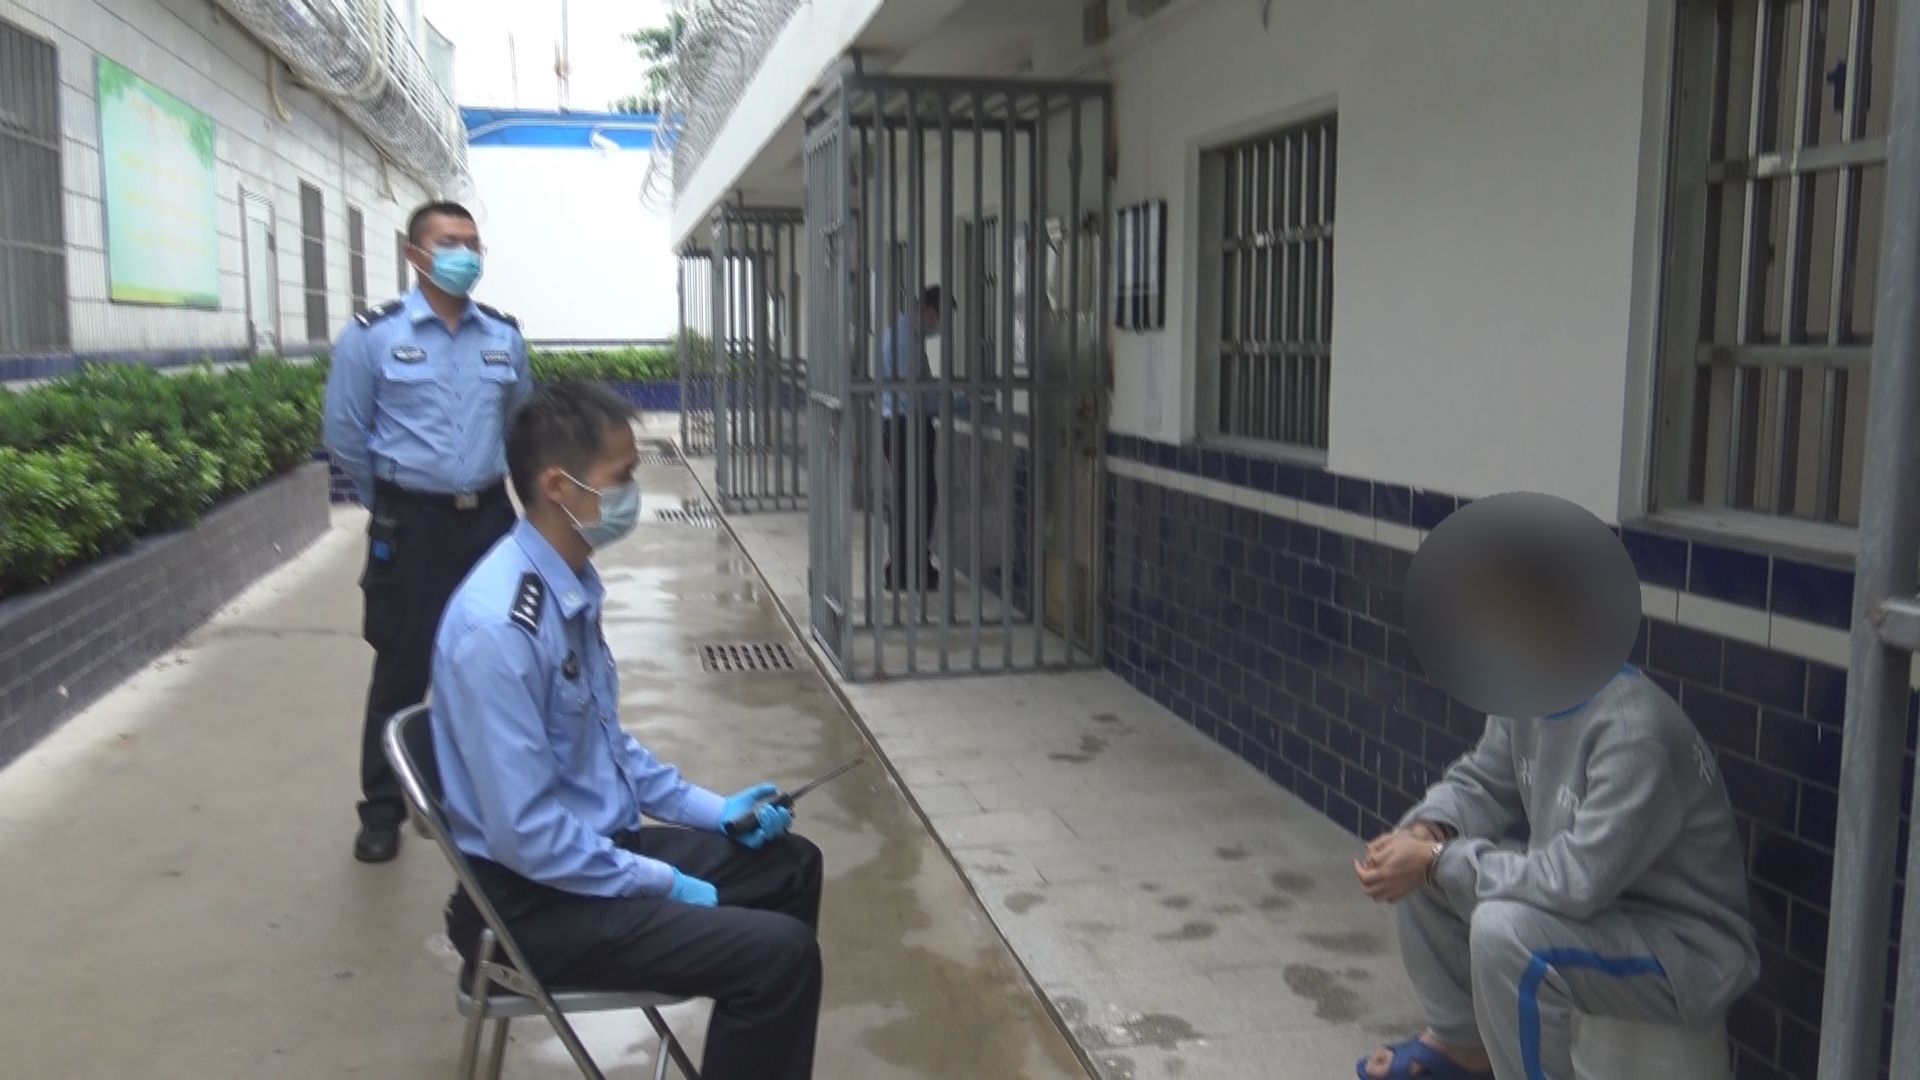 被拘留人员现身说法 广汉市拘留所开展禁毒宣教活动_社会_德阳频道_四川在线